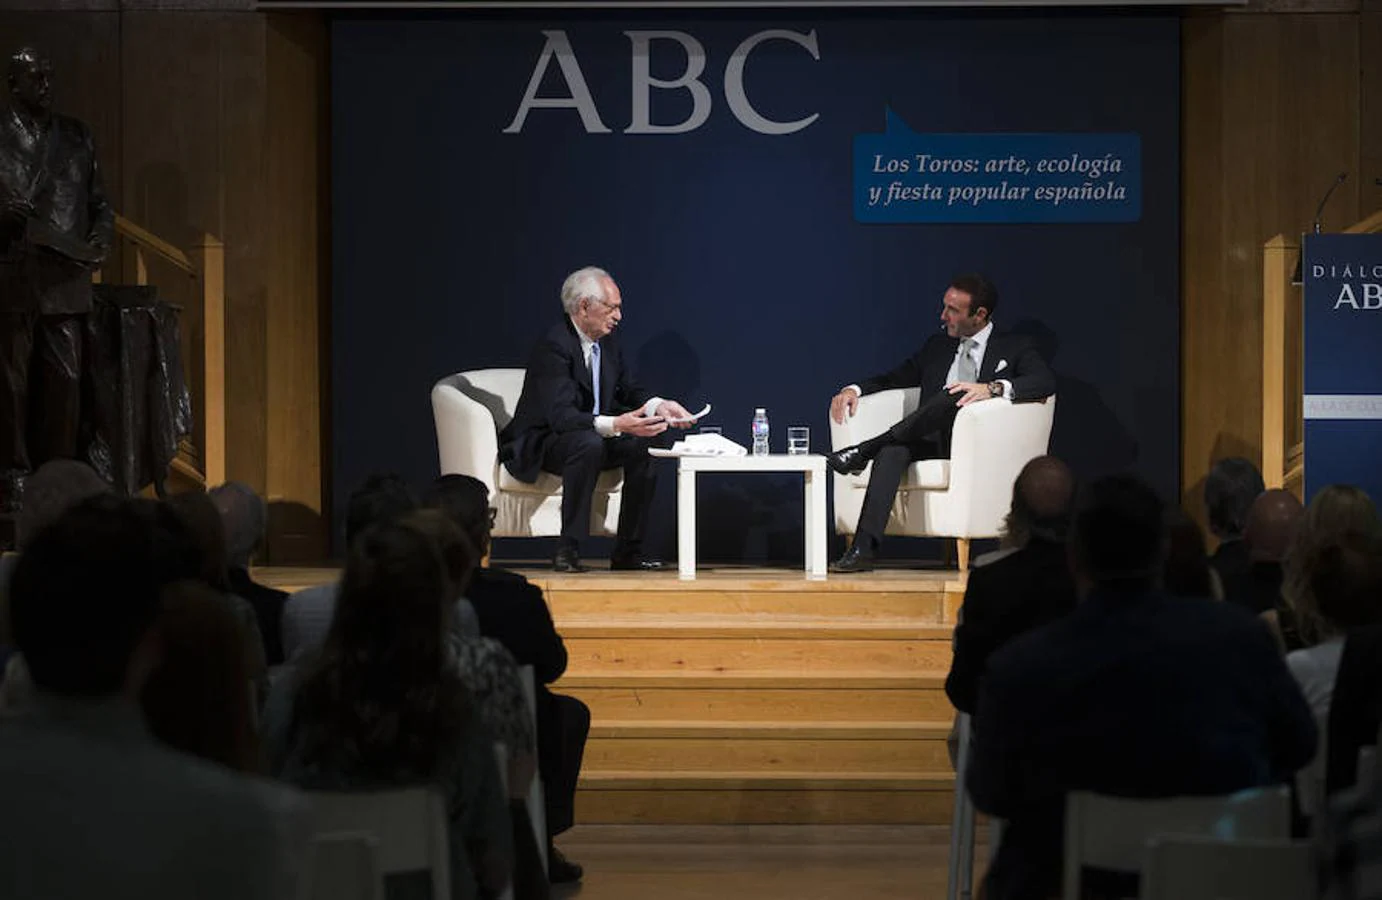 El encuentro entre Enrique Ponce y el crítico taurino Andrés Amorós, en imágenes